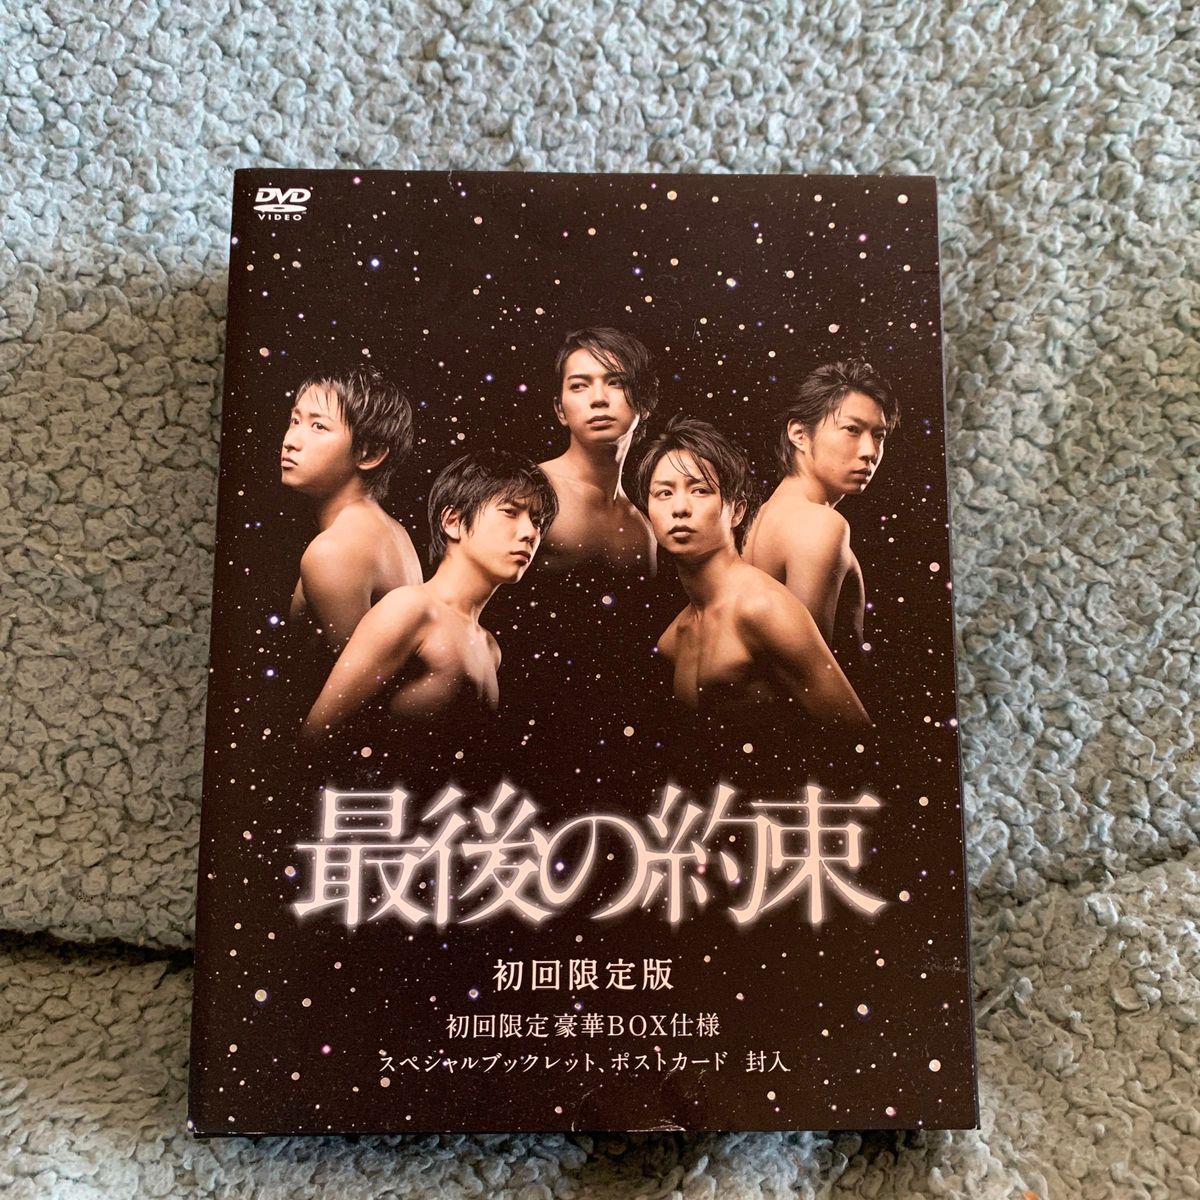 最後の約束 DVD 豪華 初回限定盤 嵐ARASHI